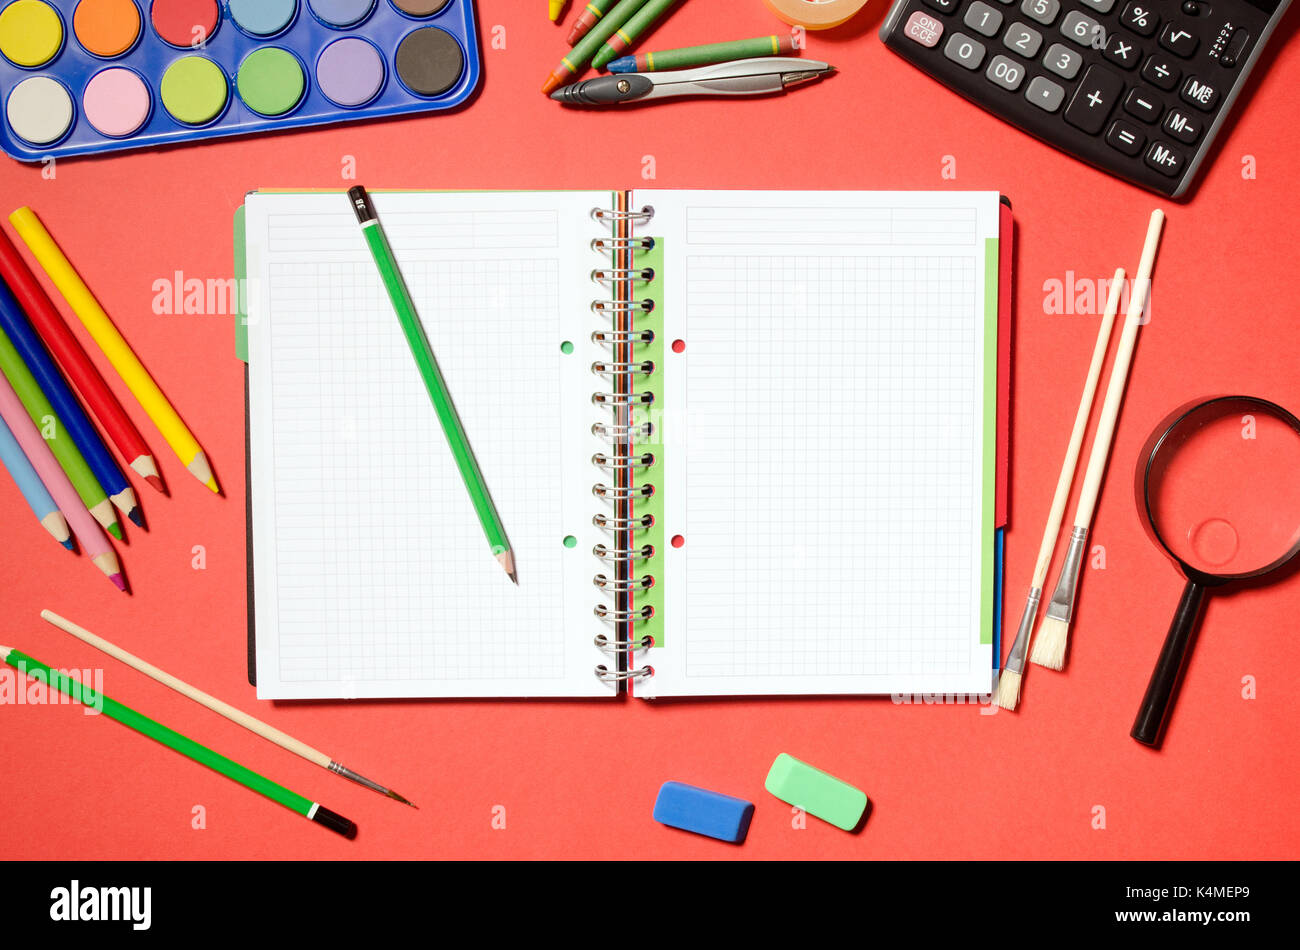 Leere notepad mit Schule und Büro Schreibwaren, roten Hintergrund. Stationery Office desk top Ansicht Tabelle Schüler Konzept Stockfoto